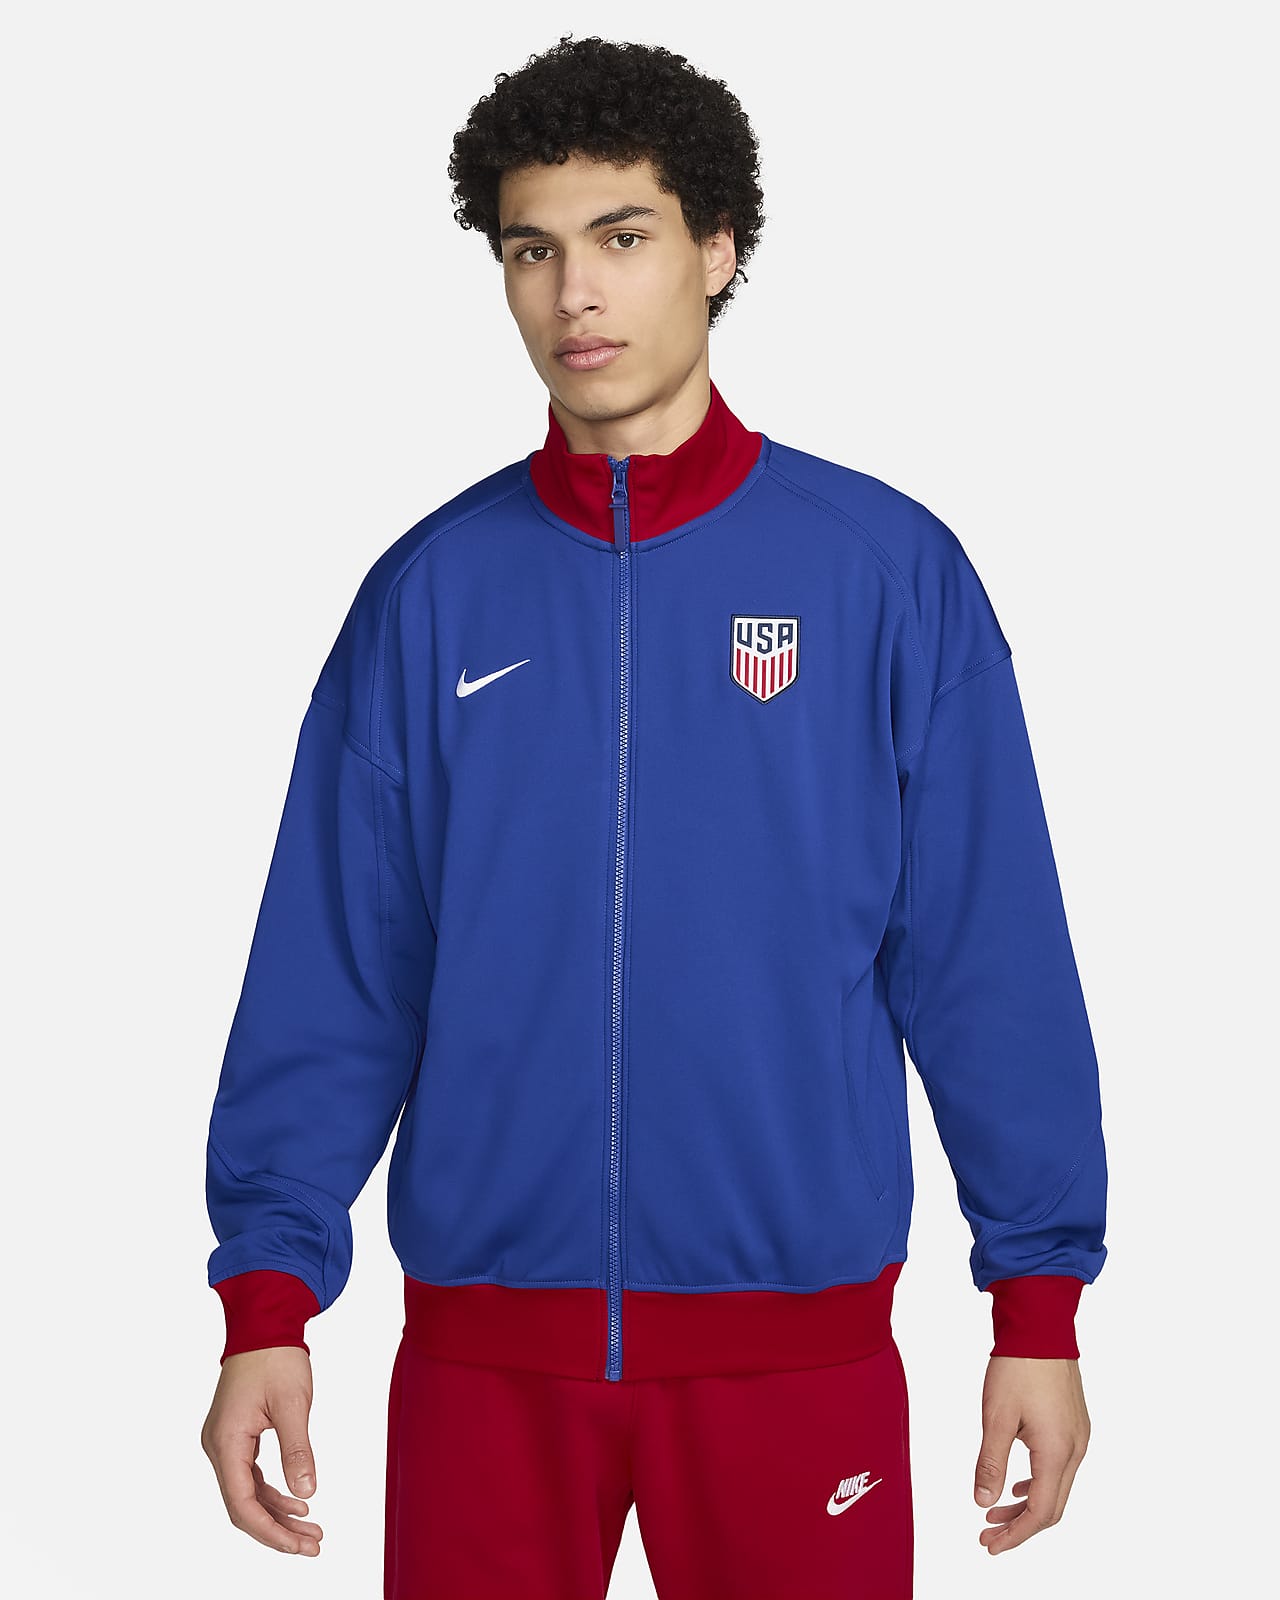 USMNT Strike Men's Nike Dri-FIT Soccer Jacket